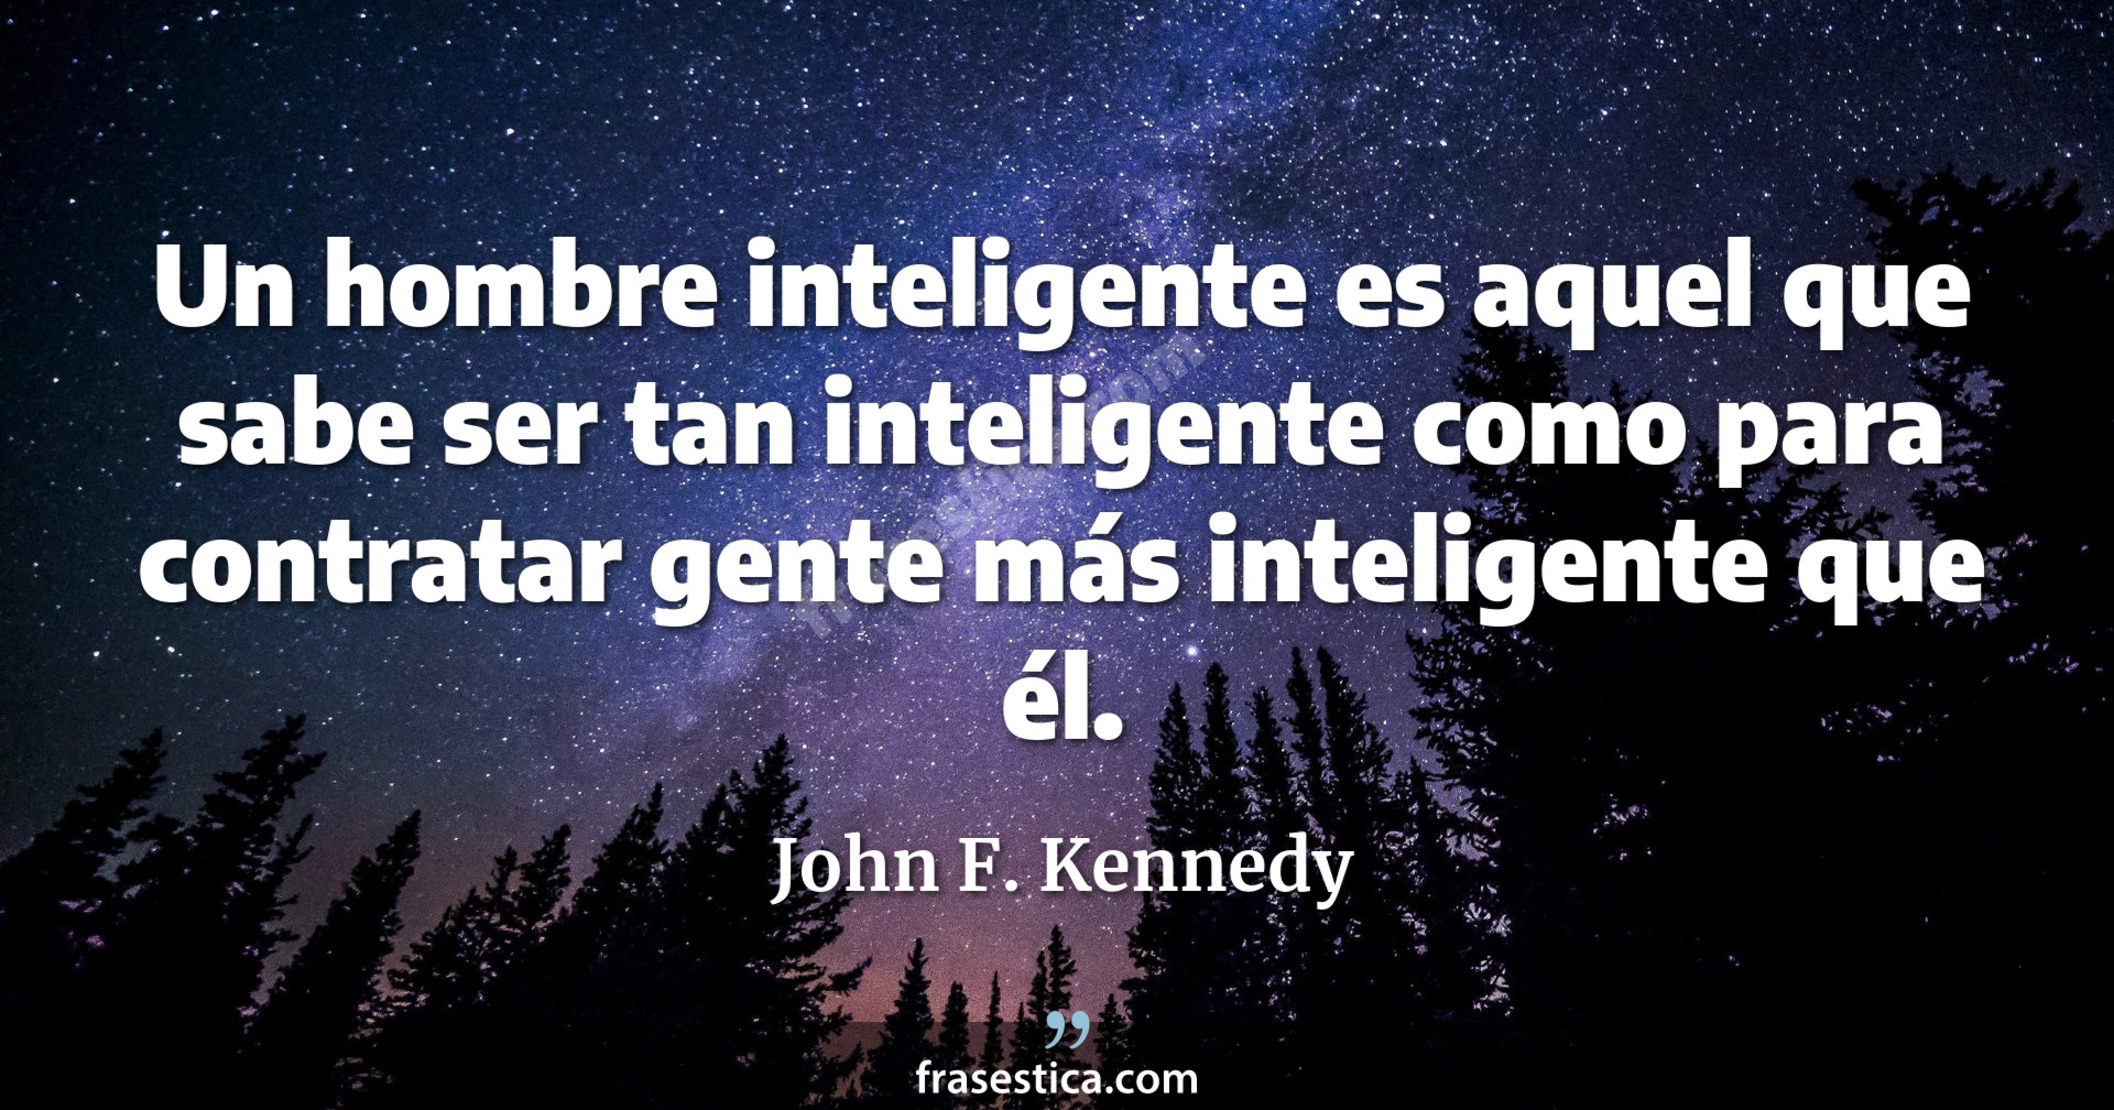 Un hombre inteligente es aquel que sabe ser tan inteligente como para contratar gente más inteligente que él. - John F. Kennedy